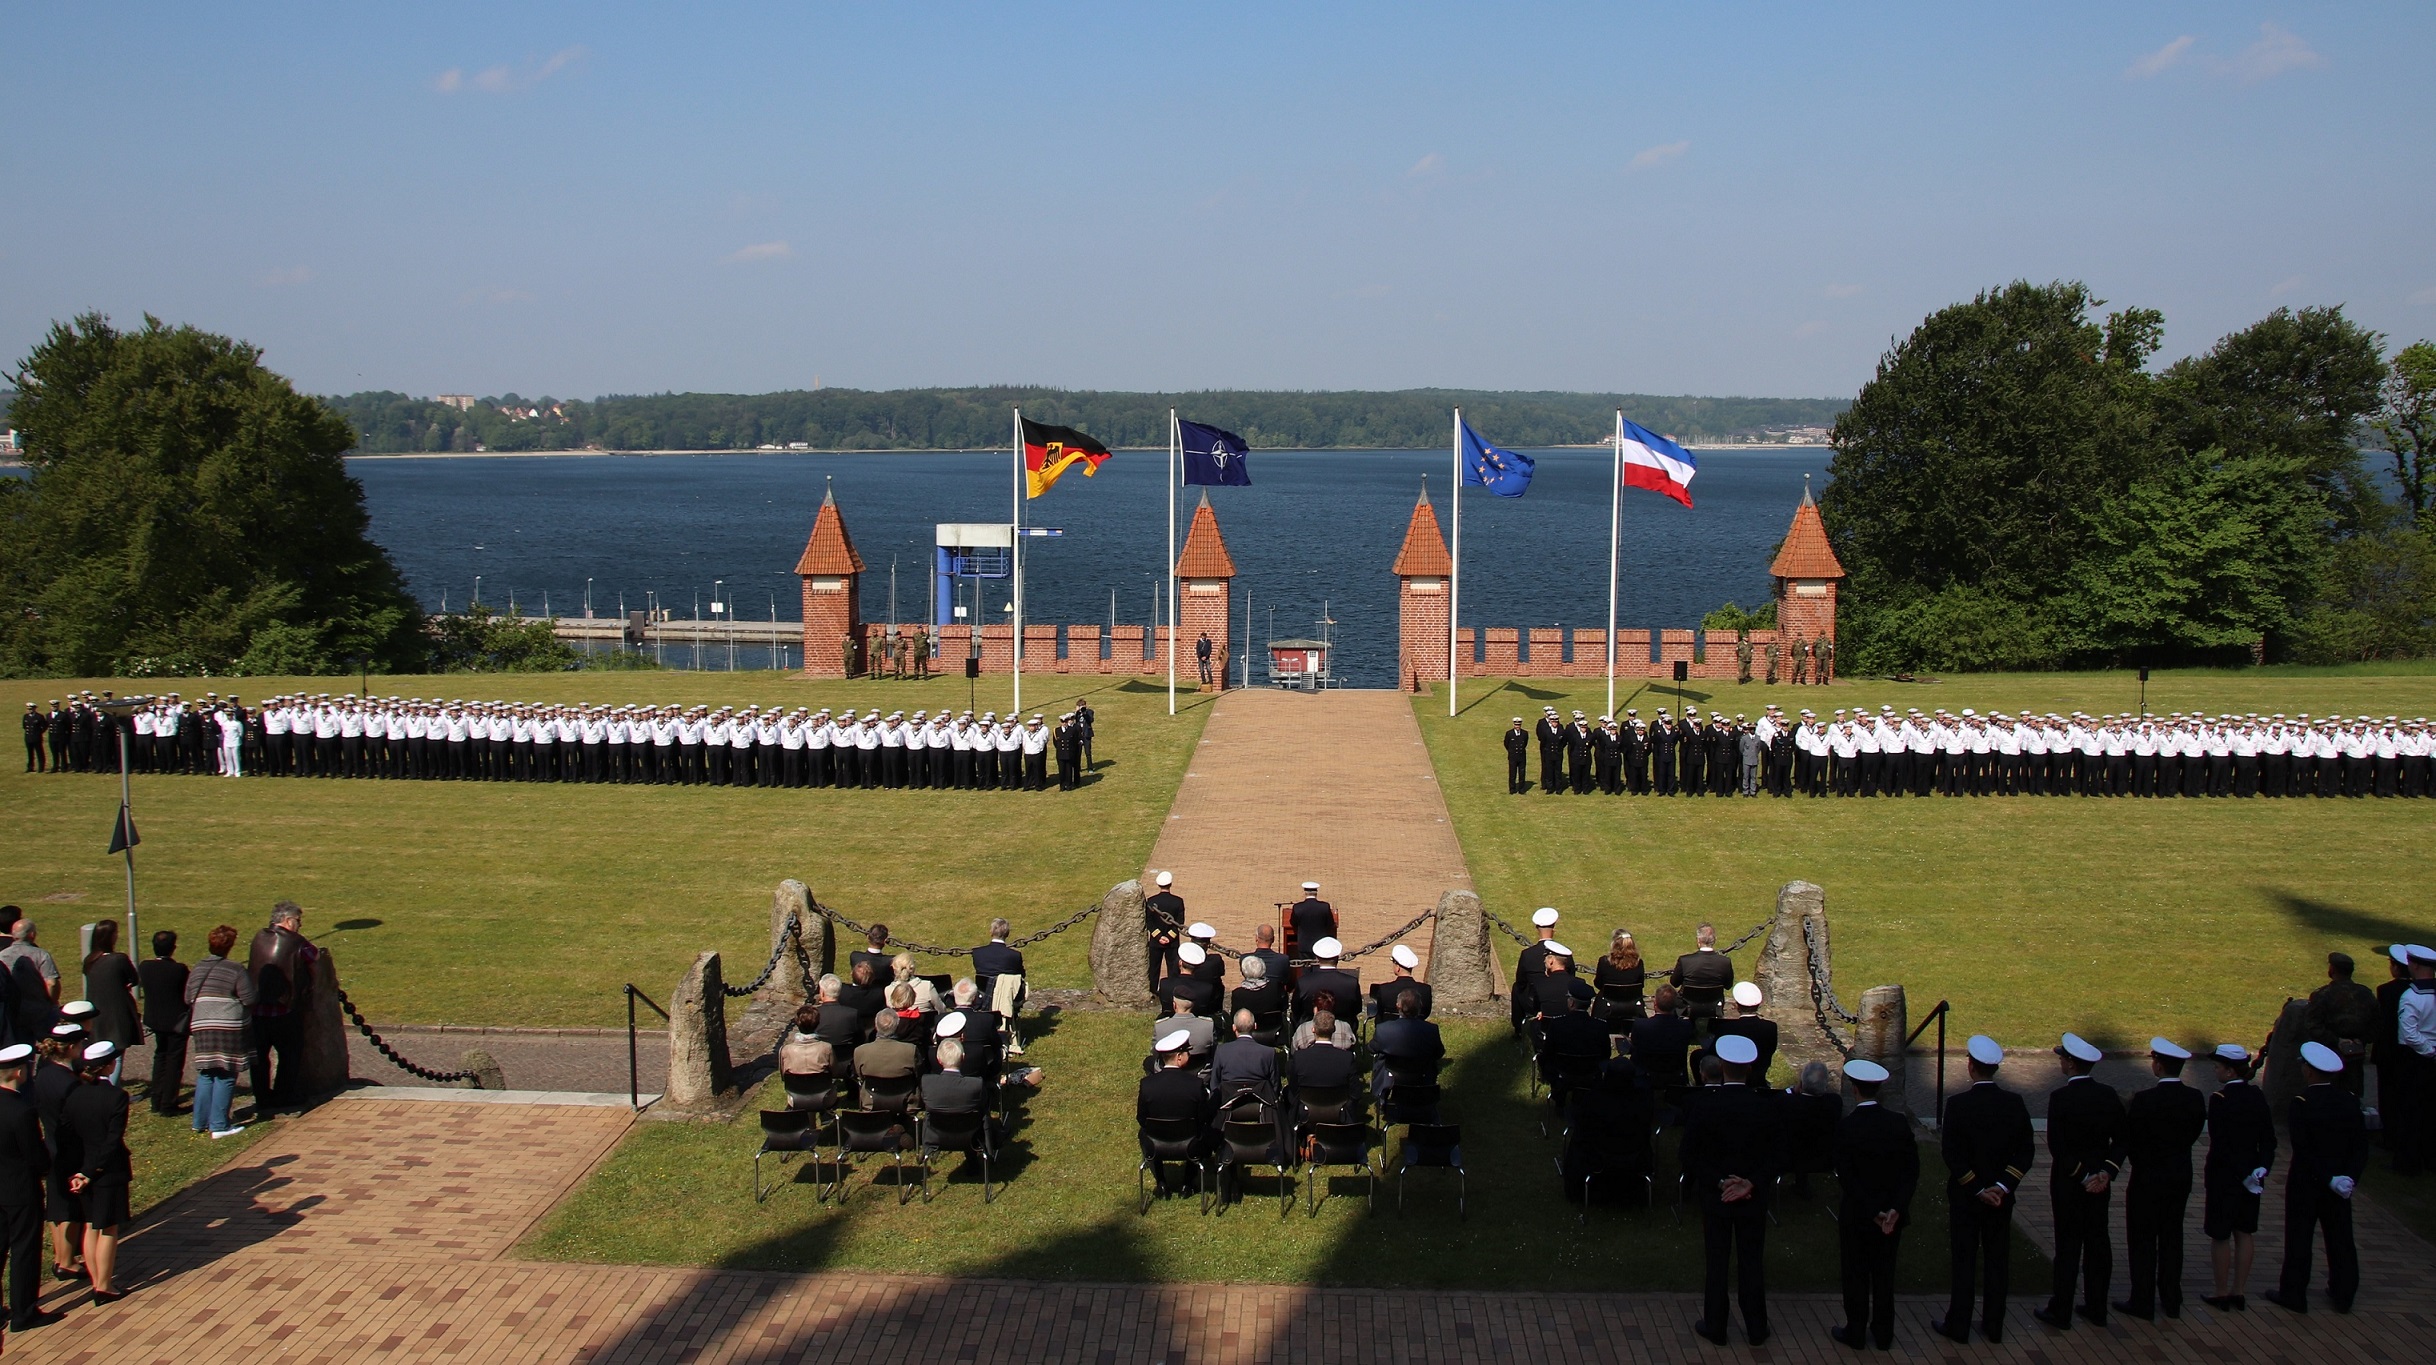 Marineschule Mürwik, 24. Mai 2019: Die angetretenen Crewmitglieder der Crew VII/2018 sowie Gäste ihrer Lehrgangsabschlussveranstaltung. Foto: FMZ, MSM.